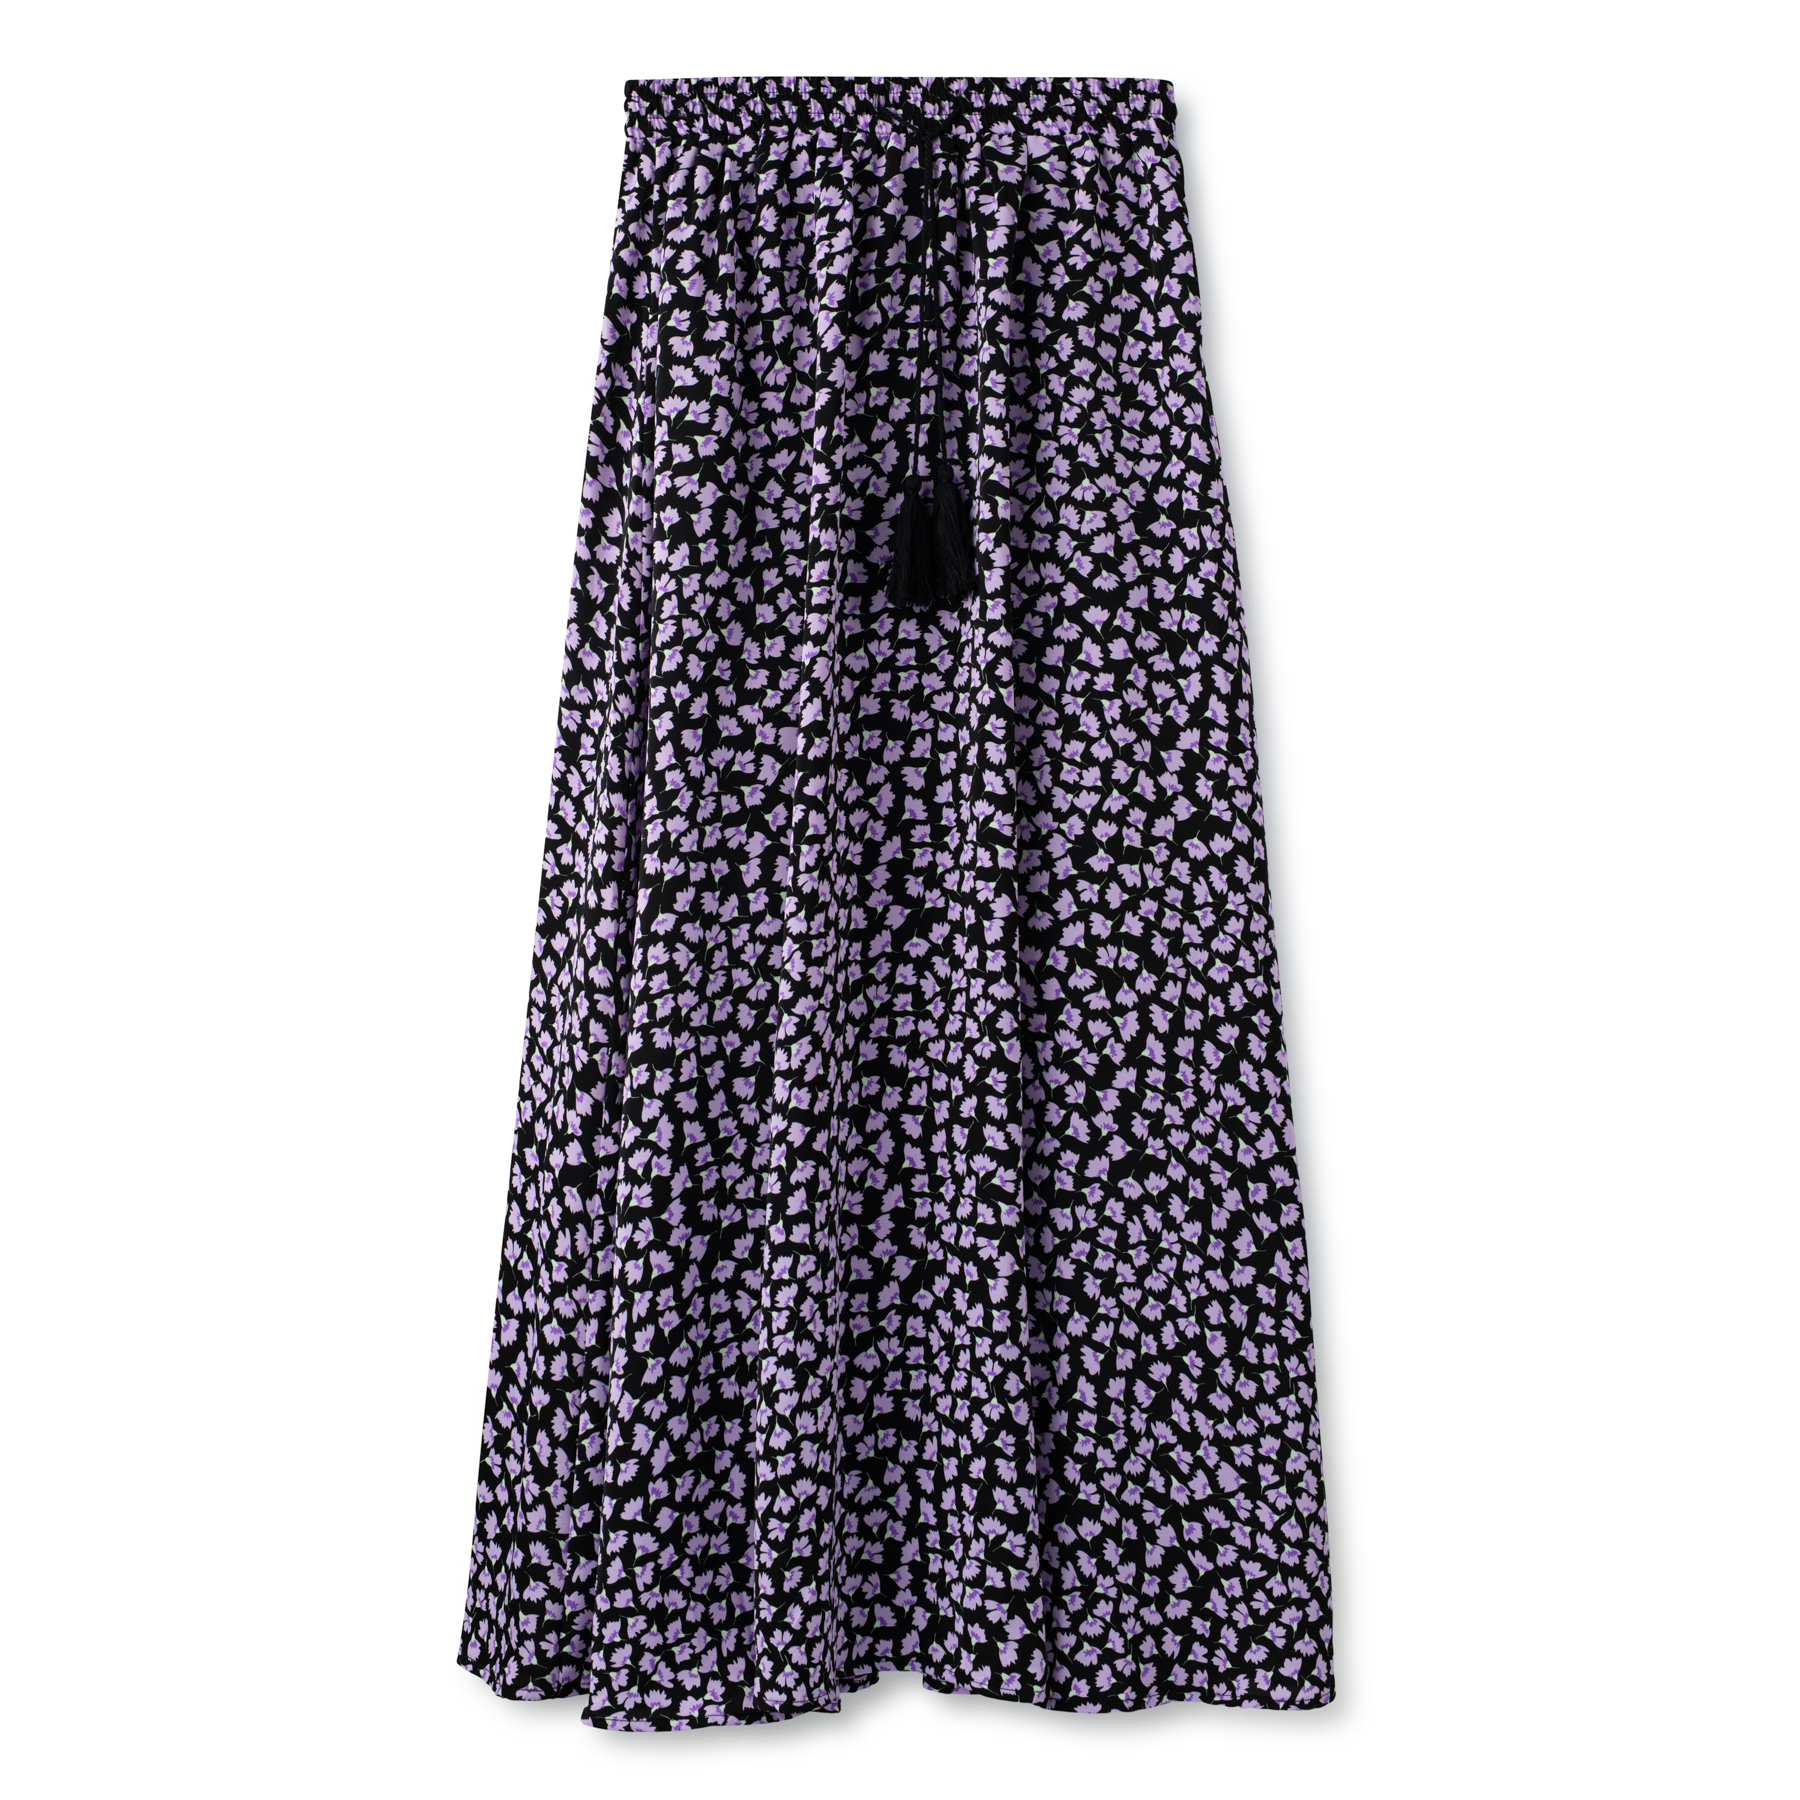 Elastic Waist Printed Skirt IN: Lavender